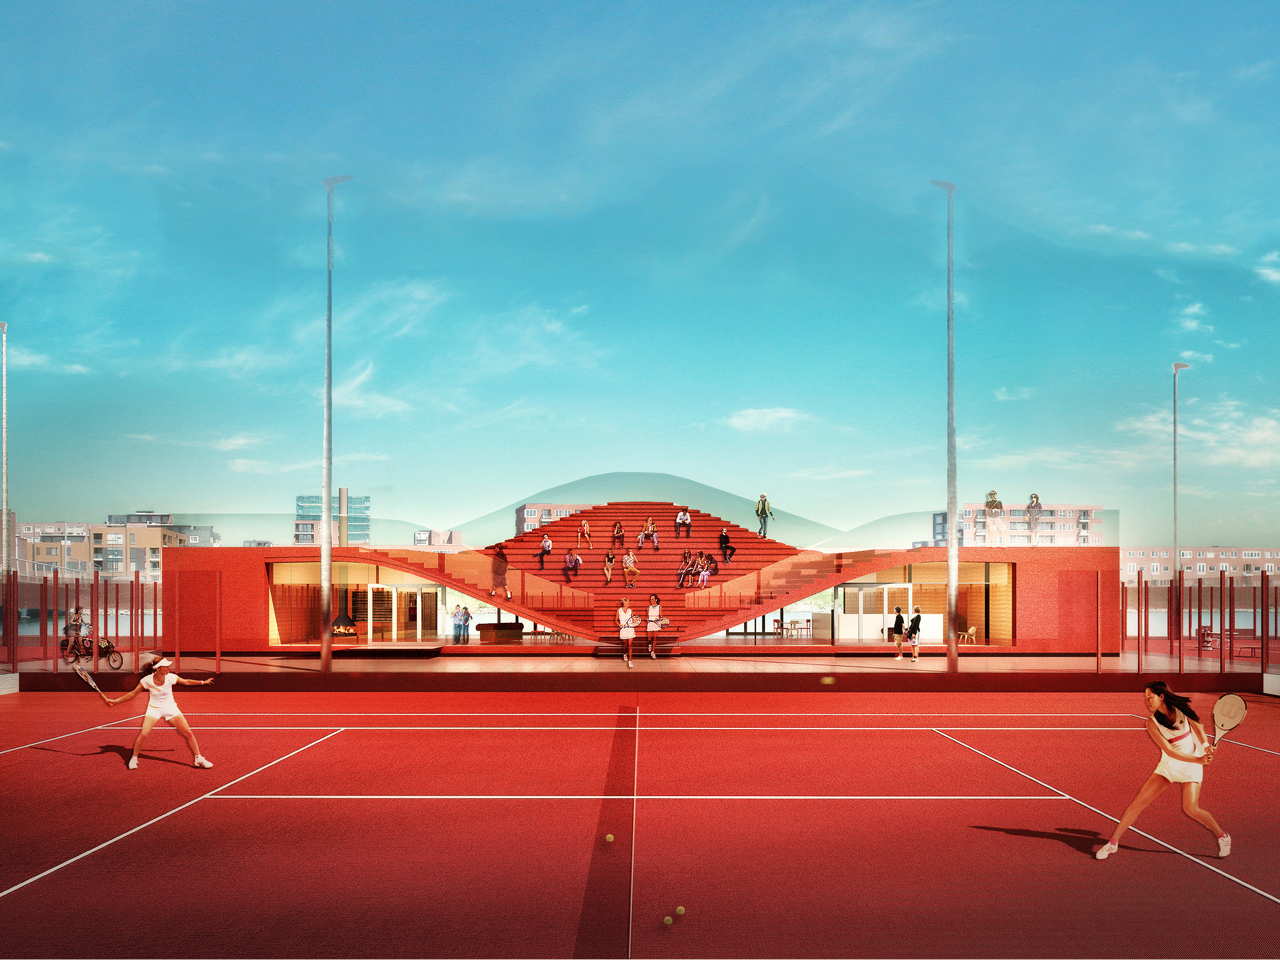 Clubhuis tennisvereniging IJburg